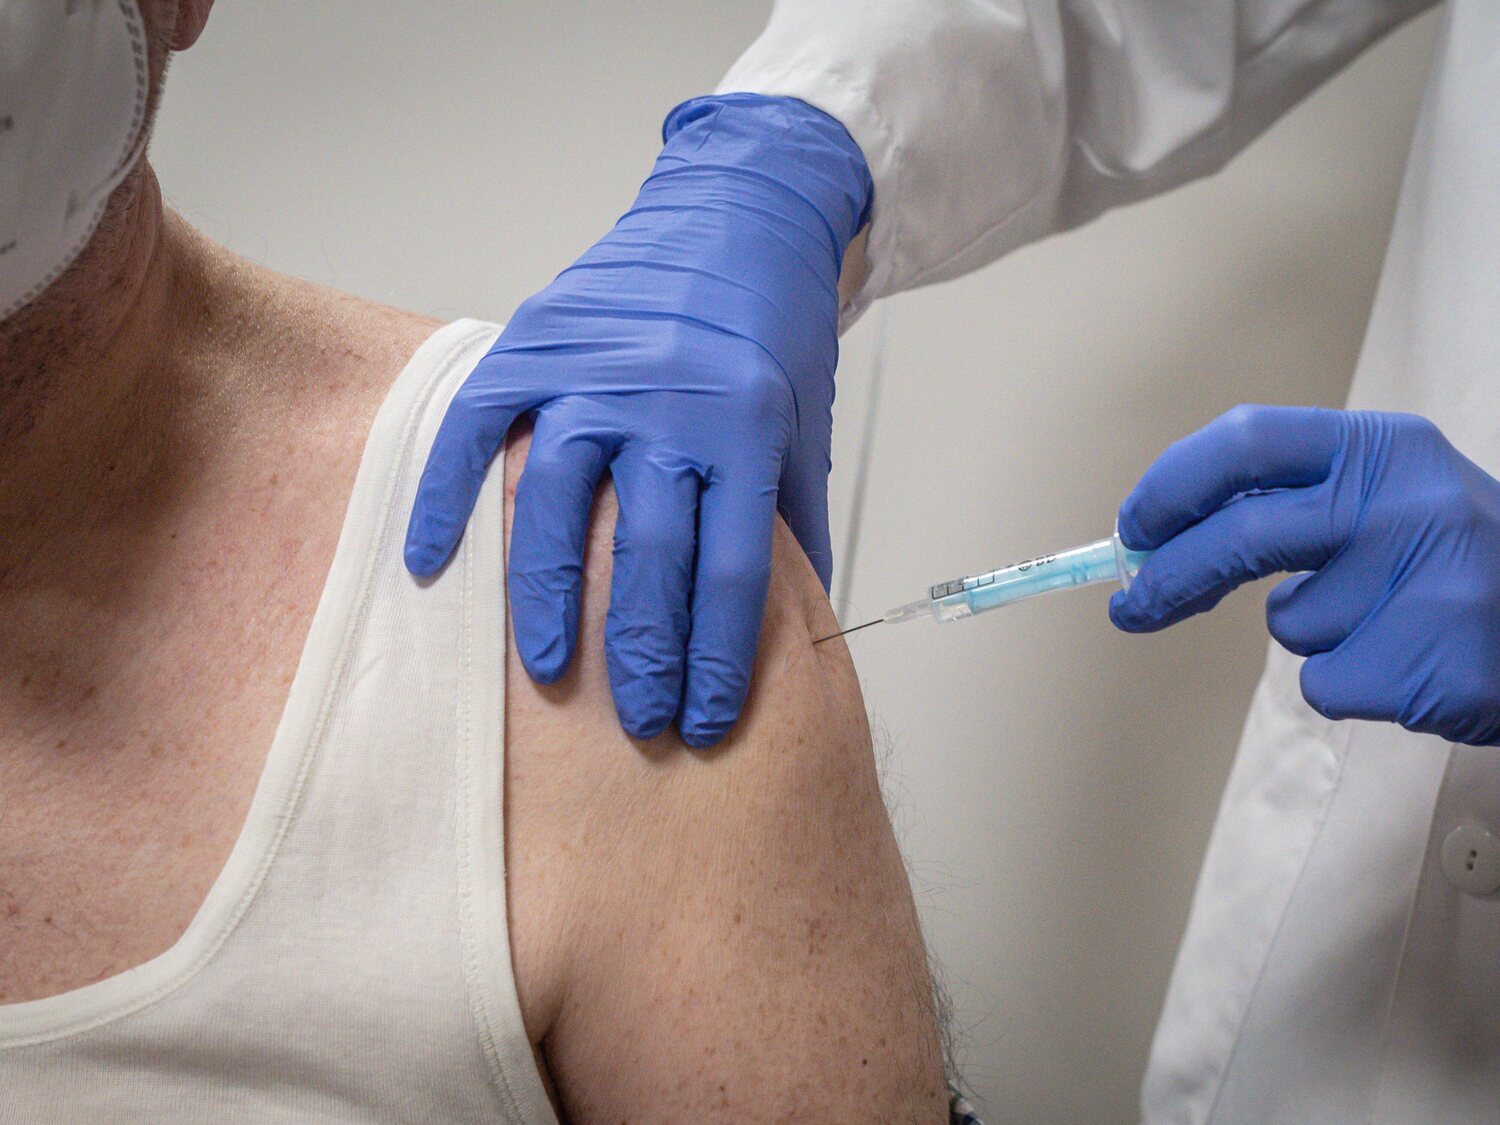 ¿Qué efectos secundarios produce la doble vacuna de Covid y gripe? Los expertos responden